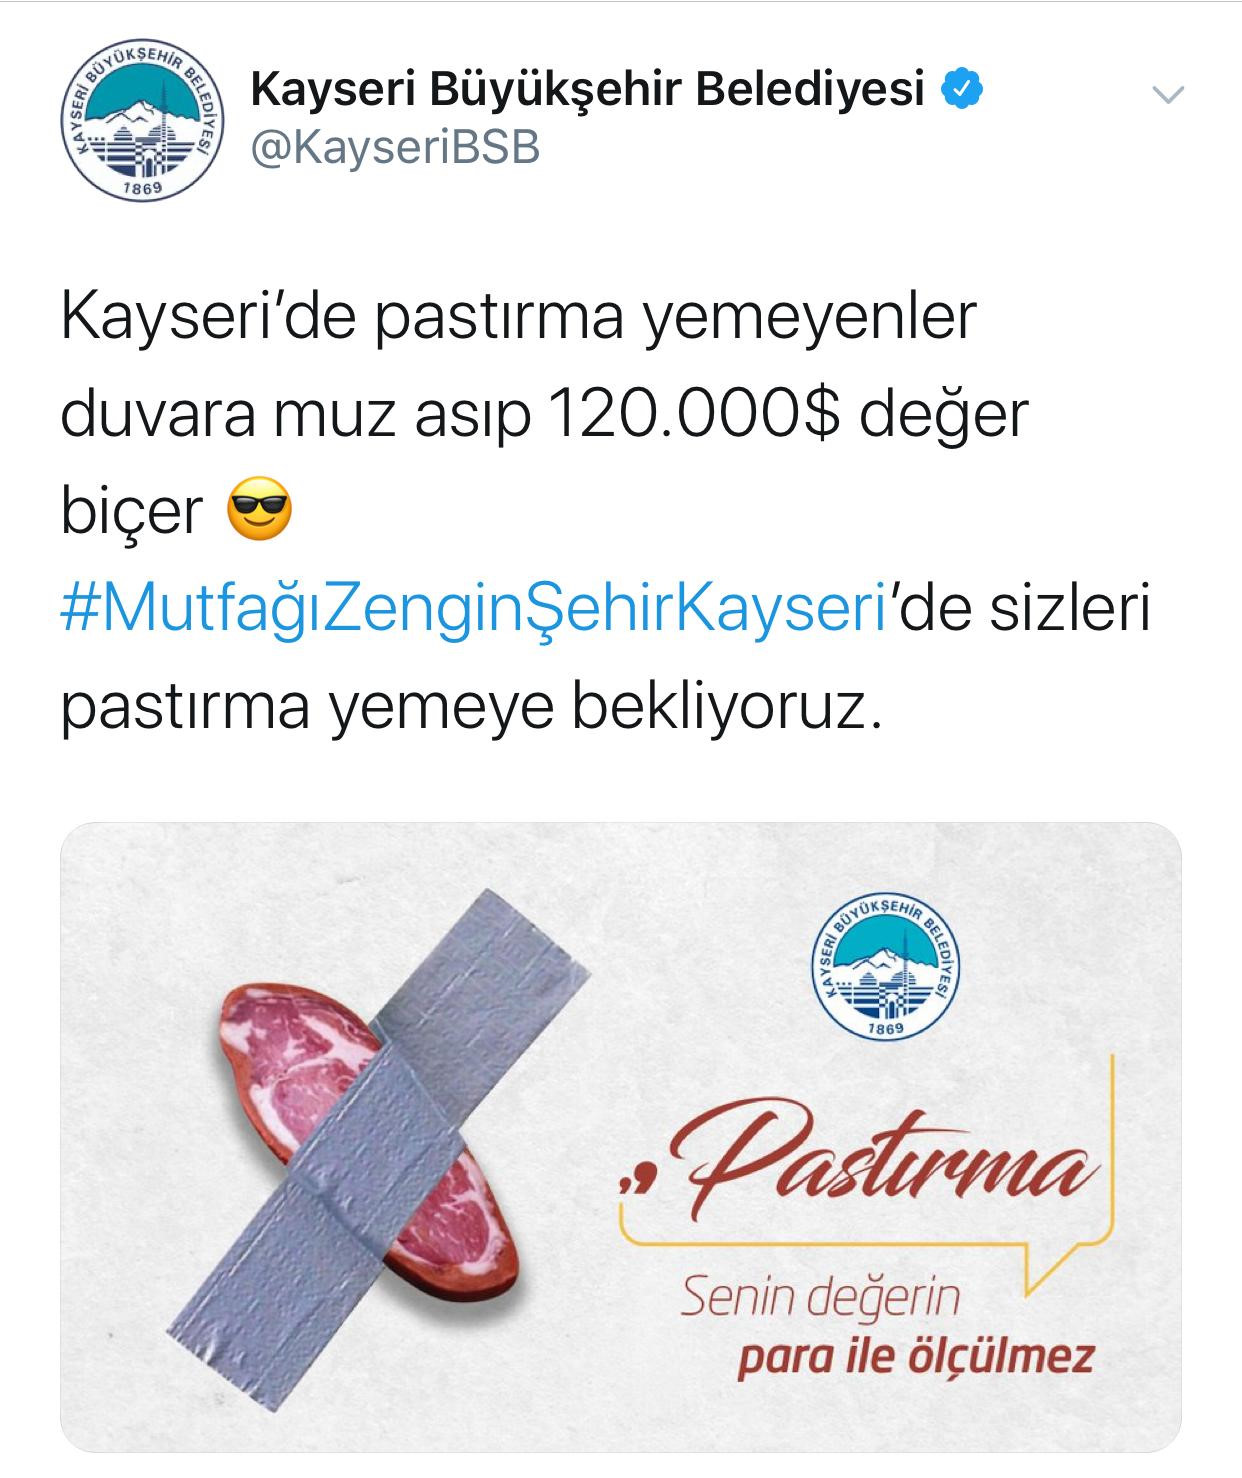 Kayseri Büyükşehir Belediyesi'nin 'pastırma'lı paylaşımı.